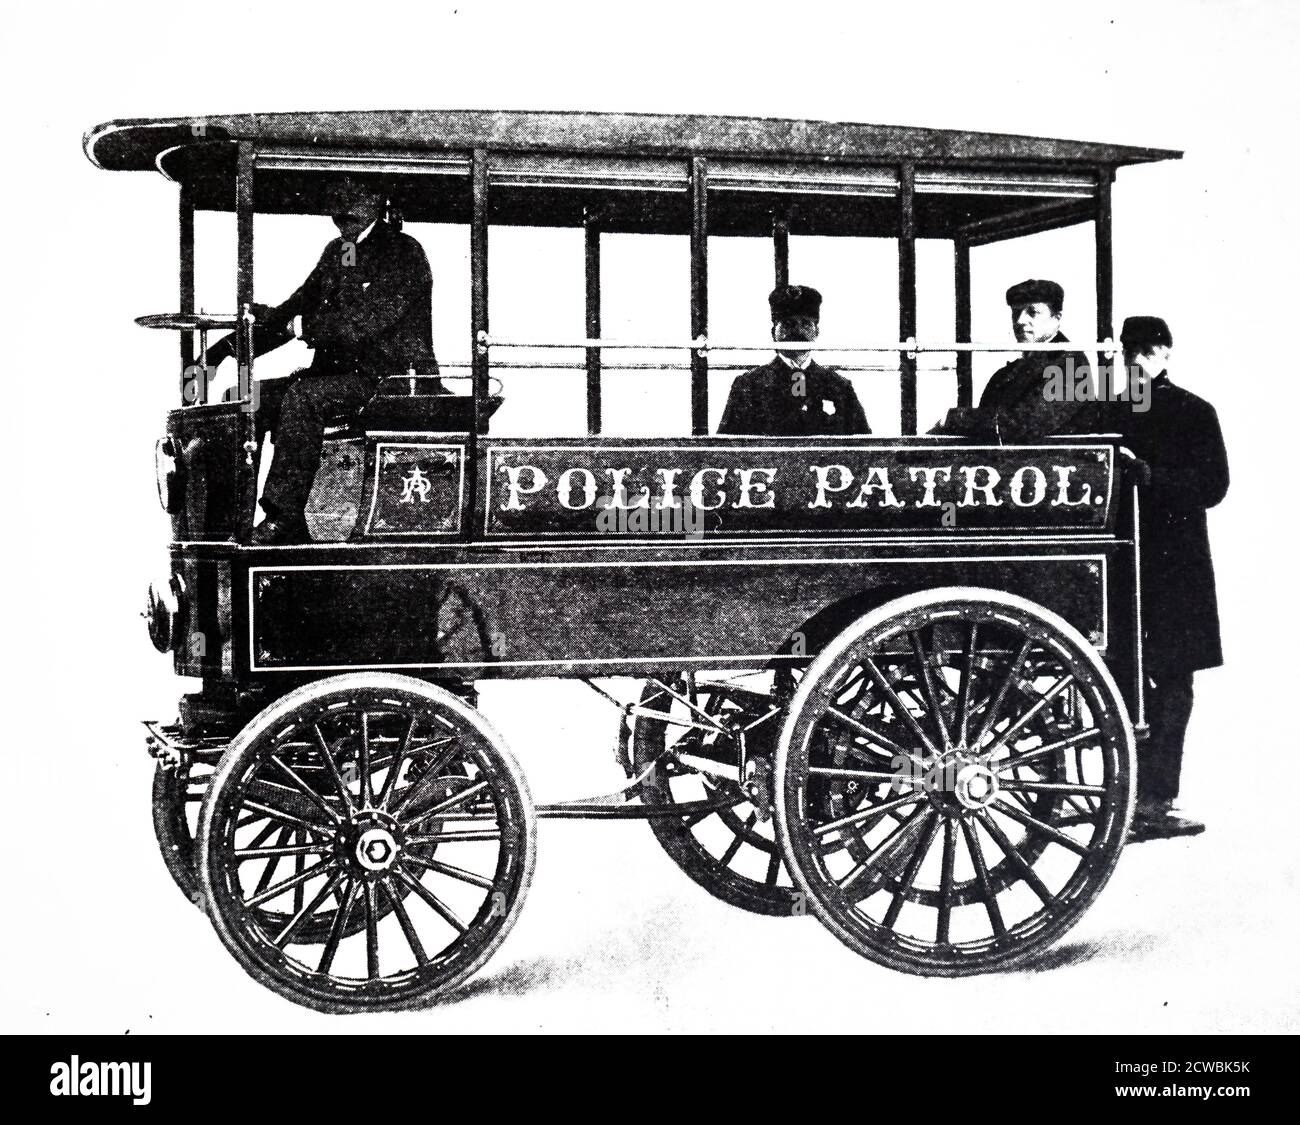 Incisione raffigurante il primo vagone di pattuglia della polizia. Questa automobile elettrica con due motori elettrici da 4 hp, è stata costruita da Frank P. Loomis per la polizia Akron, Ohio. Foto Stock